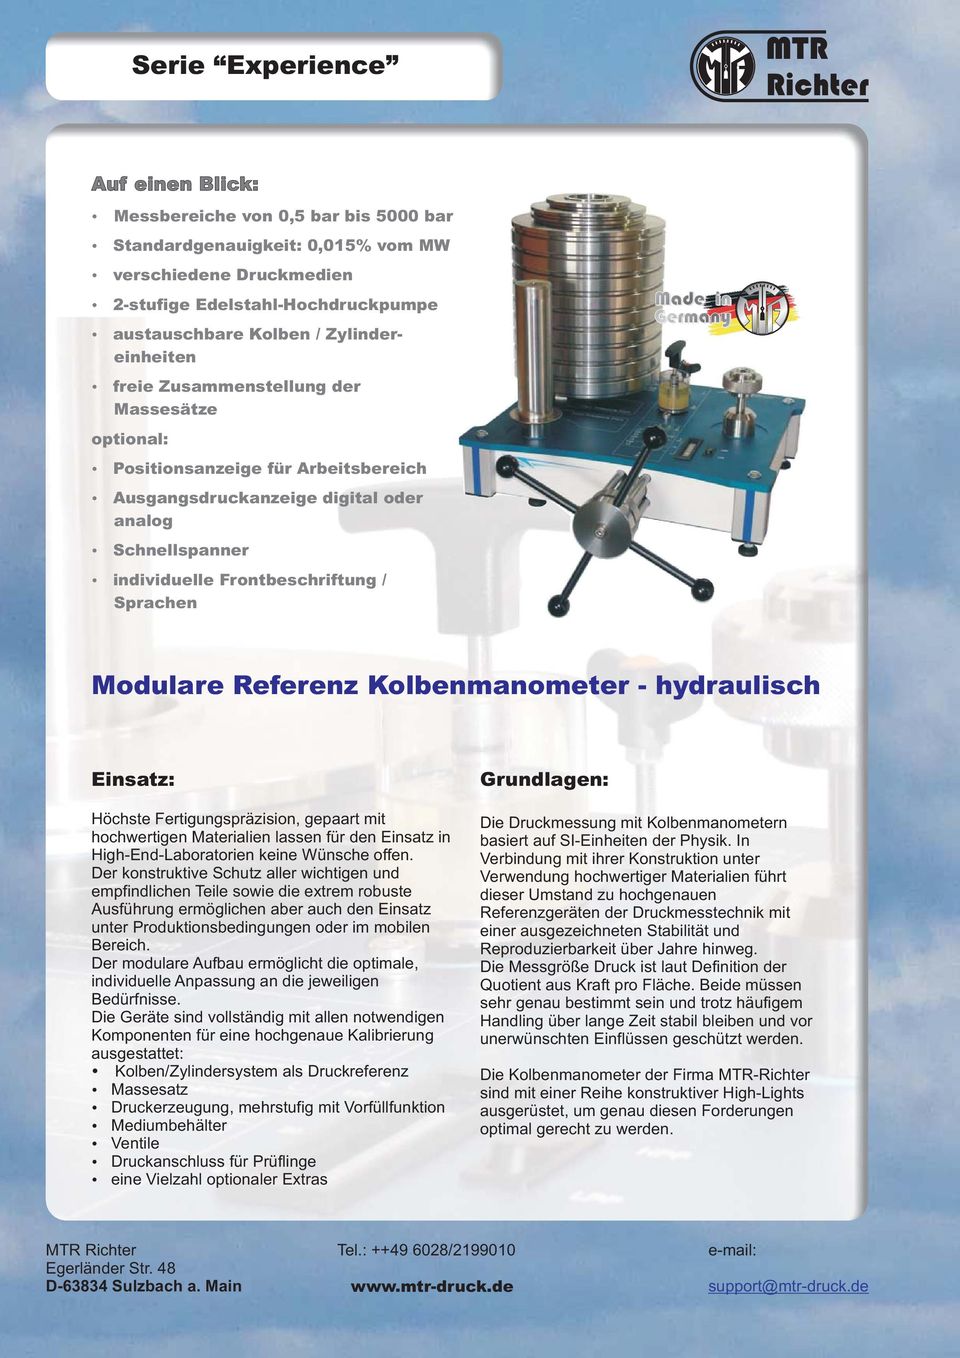 Sprachen Made in Germany Modulare Referenz Kolbenmanometer - hydraulisch Einsatz: Höchste Fertigungspräzision, gepaart mit hochwertigen Materialien lassen für den Einsatz in High-End-Laboratorien